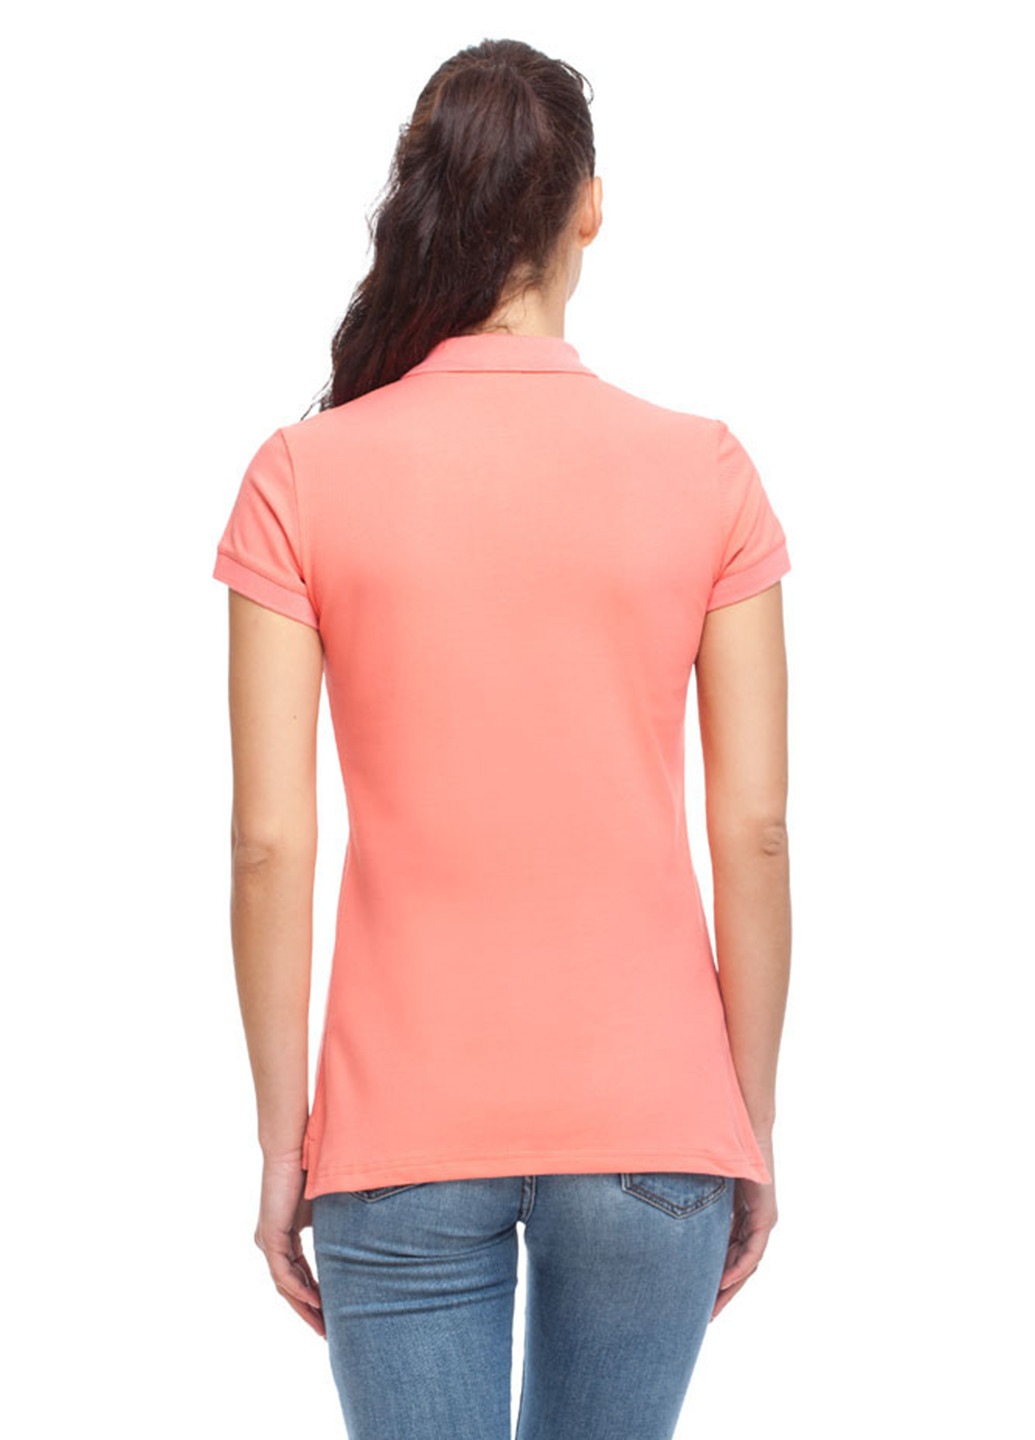 Коралловая женская футболка-поло Promin. однотонная